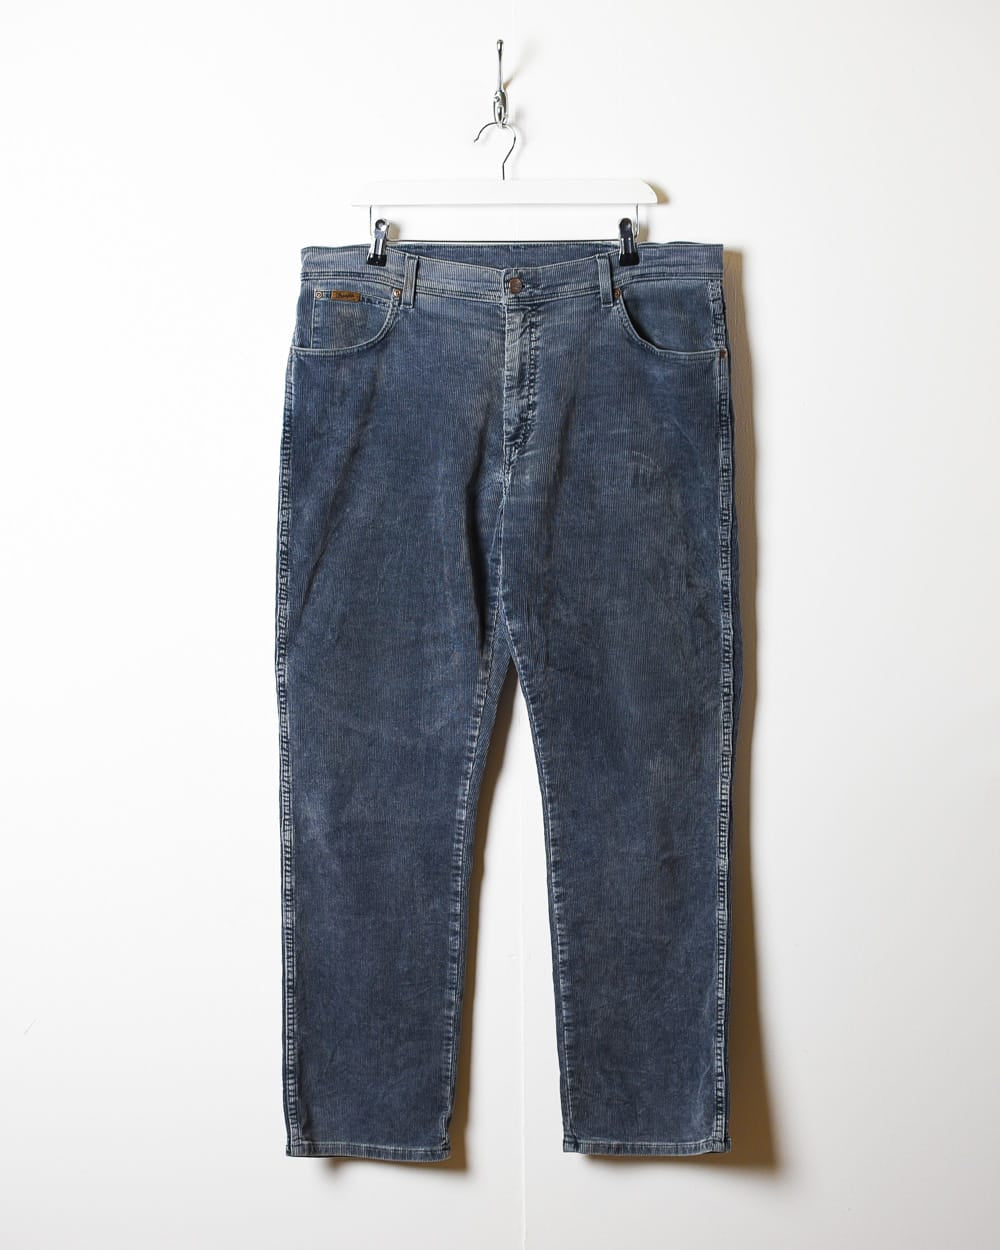 Grey Wrangler Corduroy Jeans - W40 L30